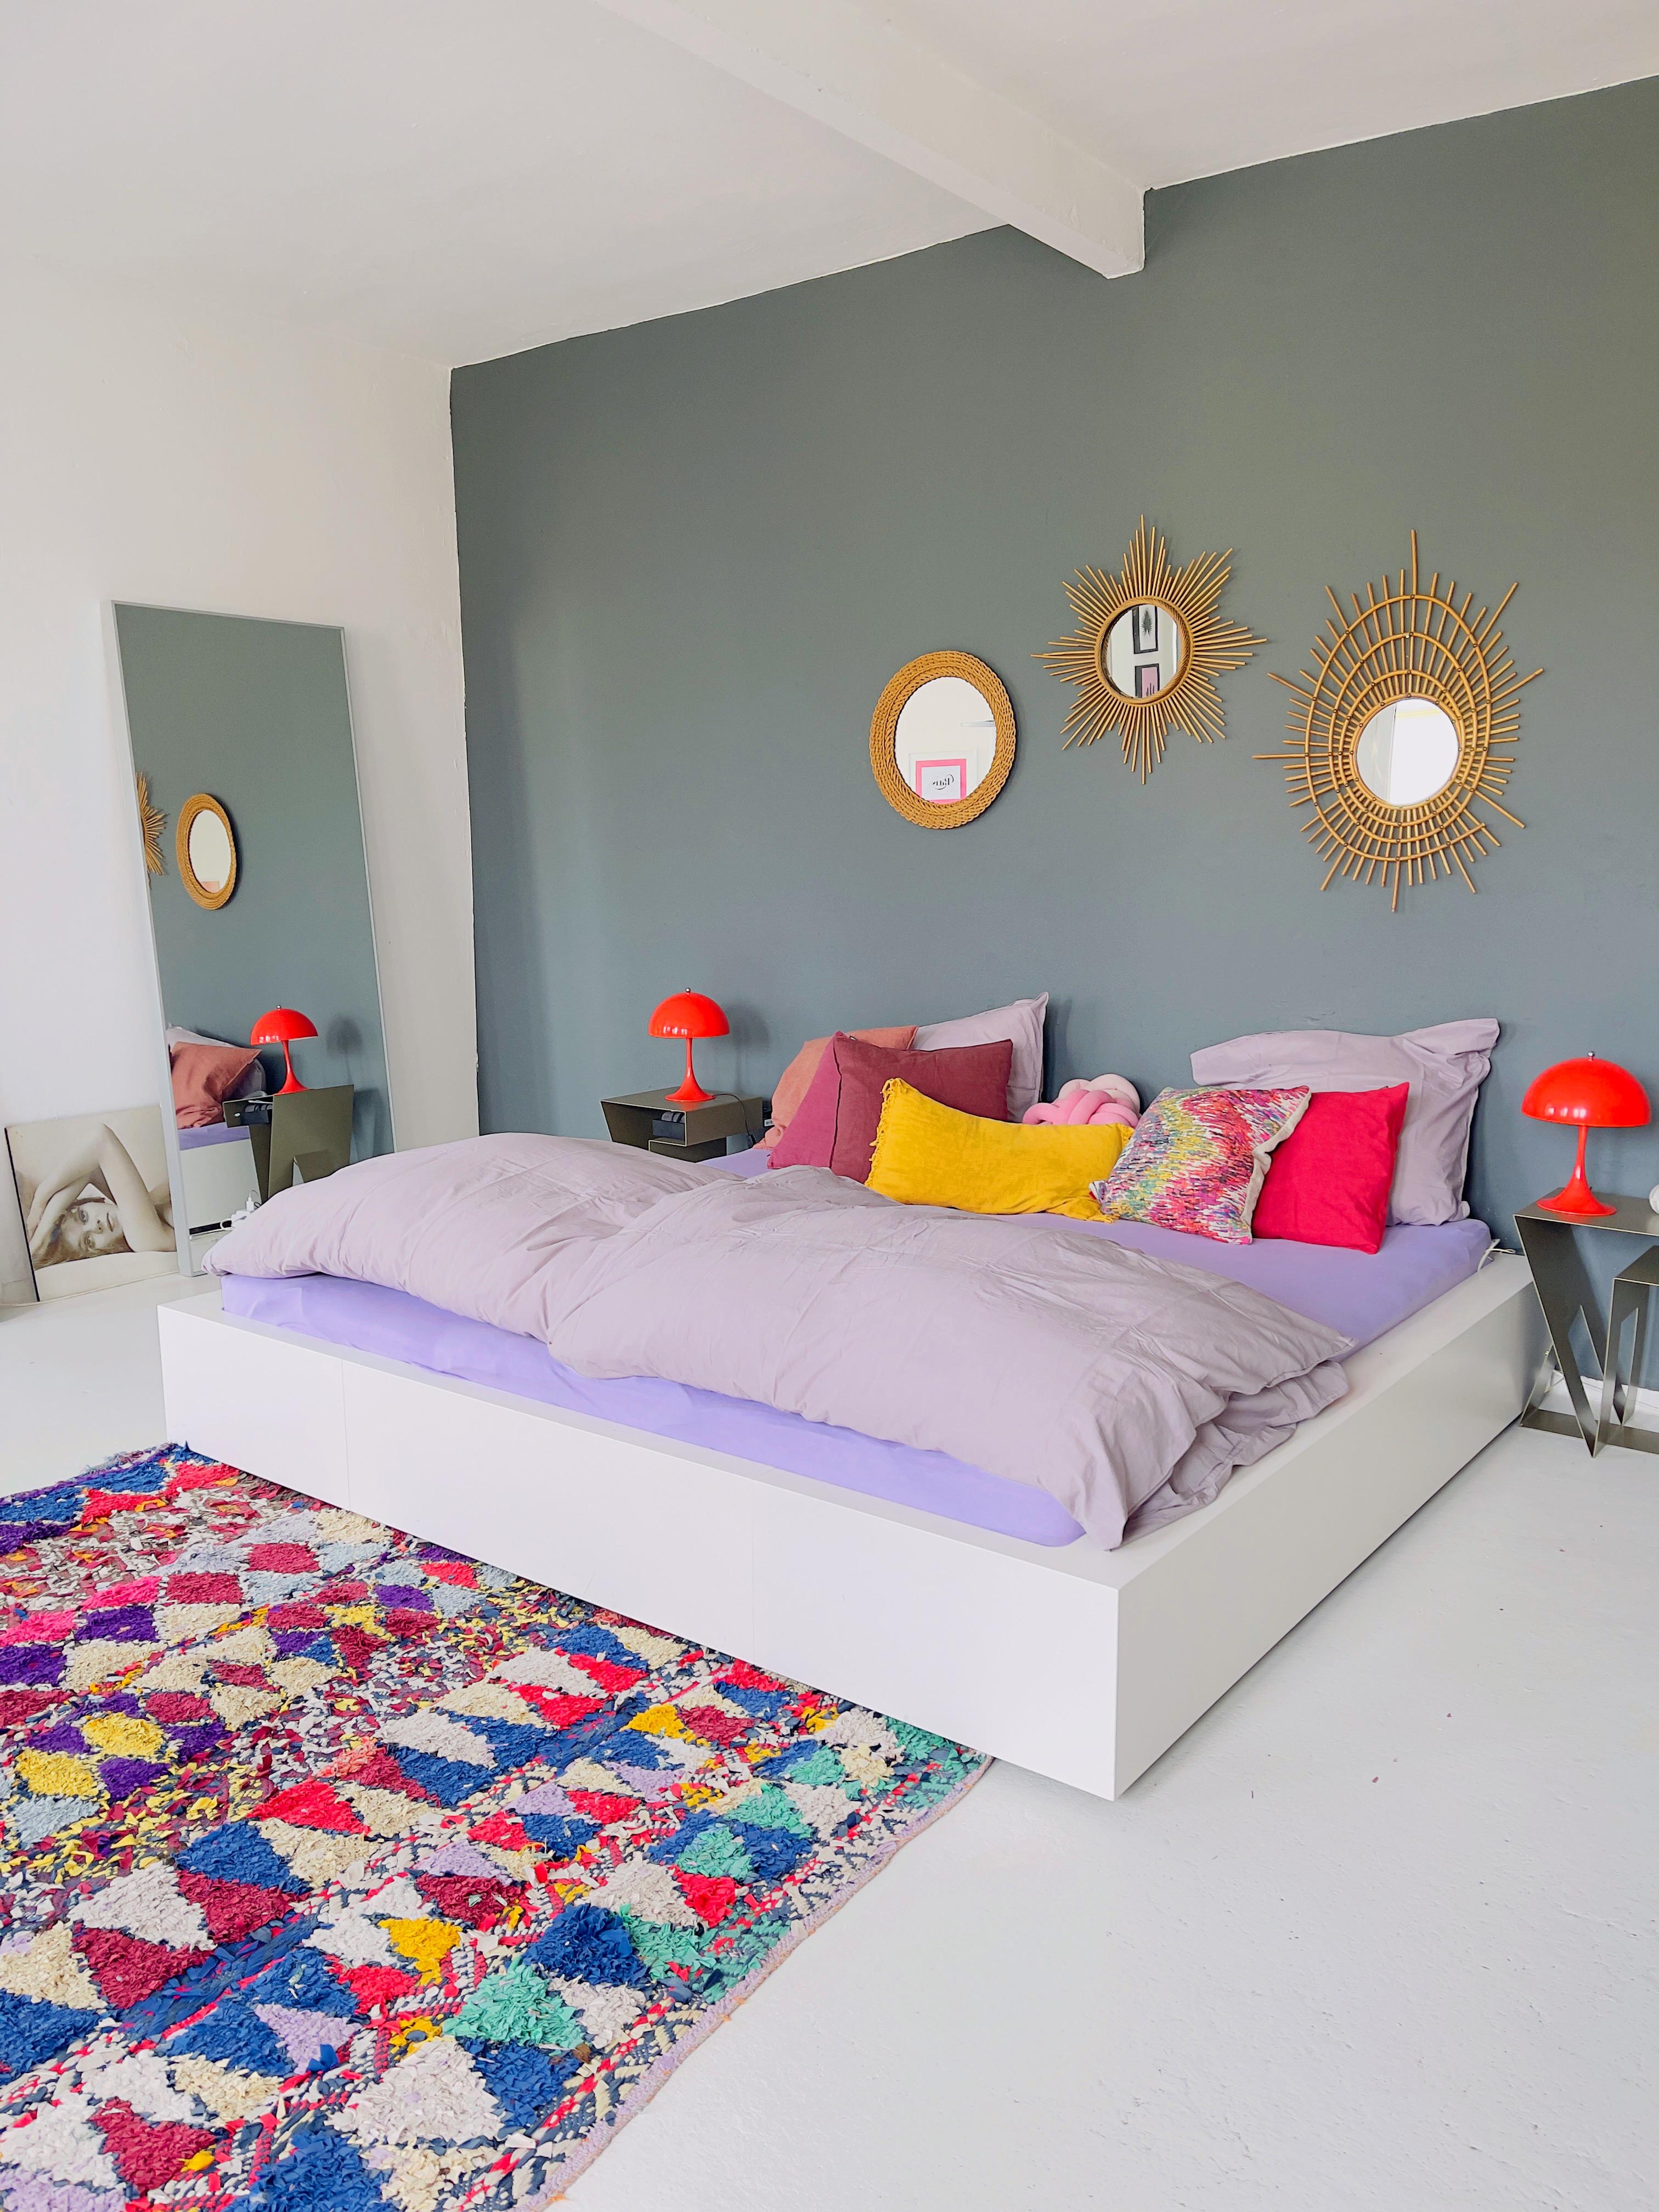 Gute Laune Schlafzimmer 💚💙💜❤️🧡 #schlafzimmer #livingchallenge #couchstyle #objekteunserertage